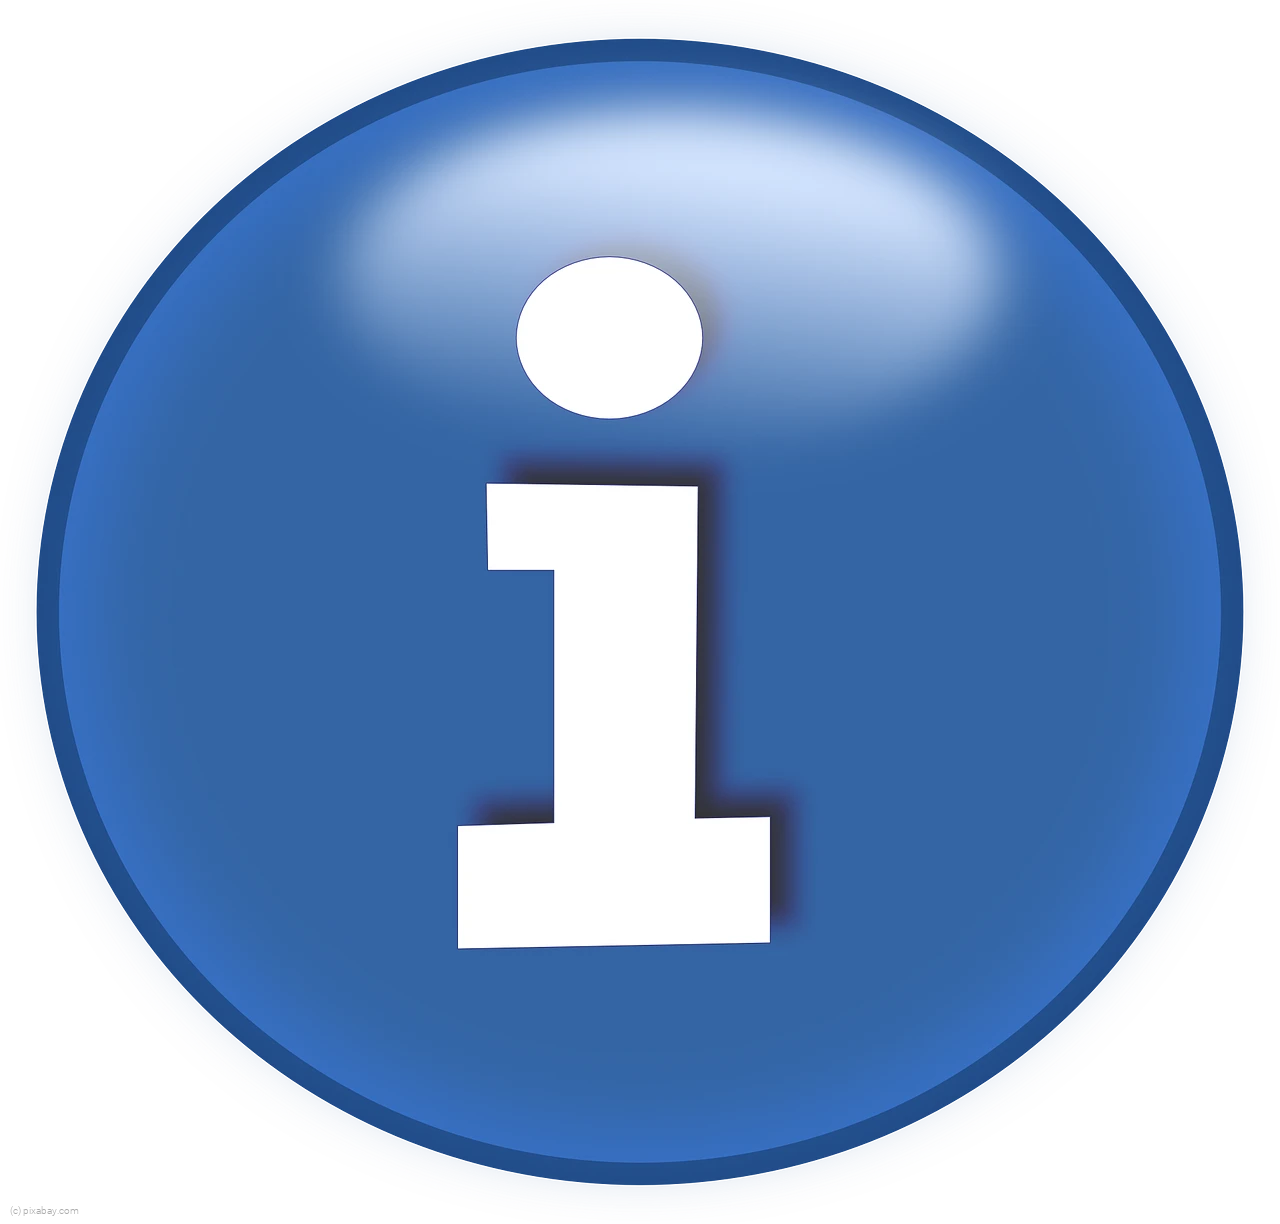 Info Point - Pixabay